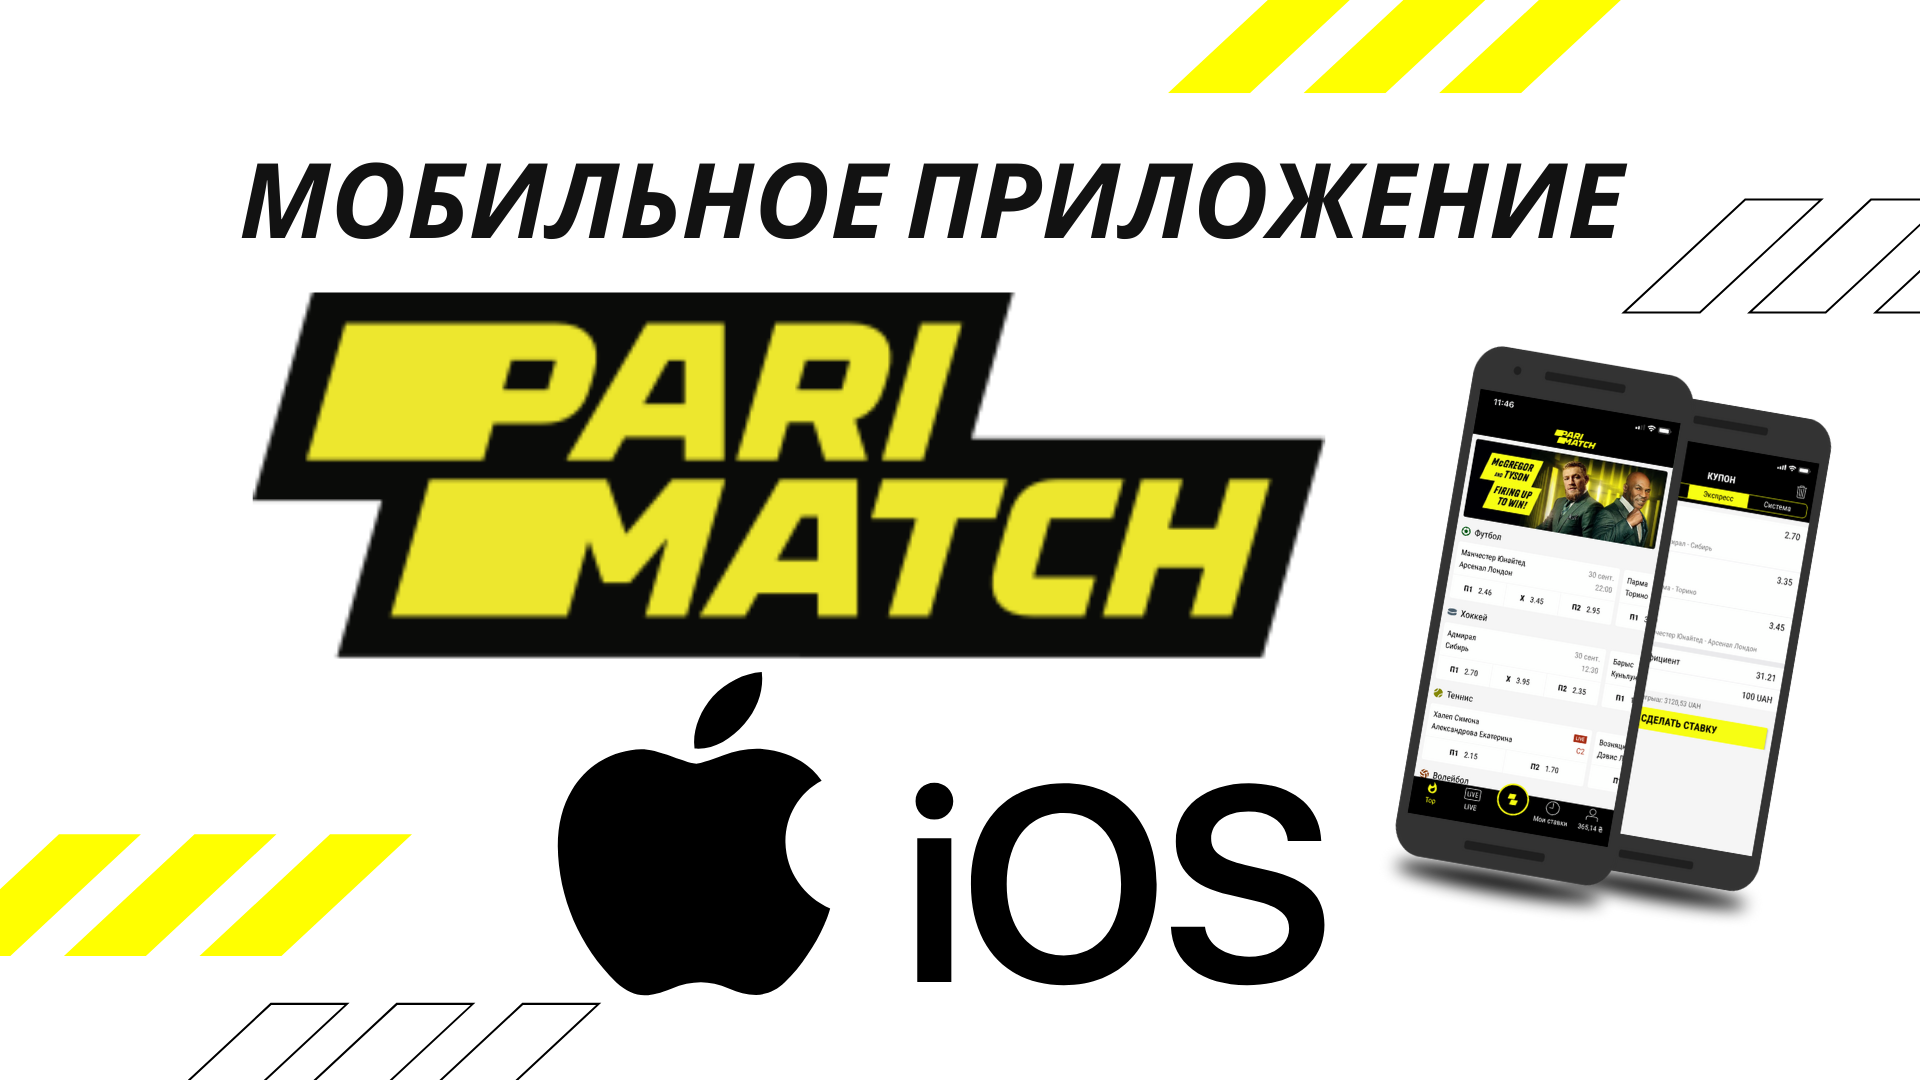 Обзор мобильного приложения БК Parimatch для IOS